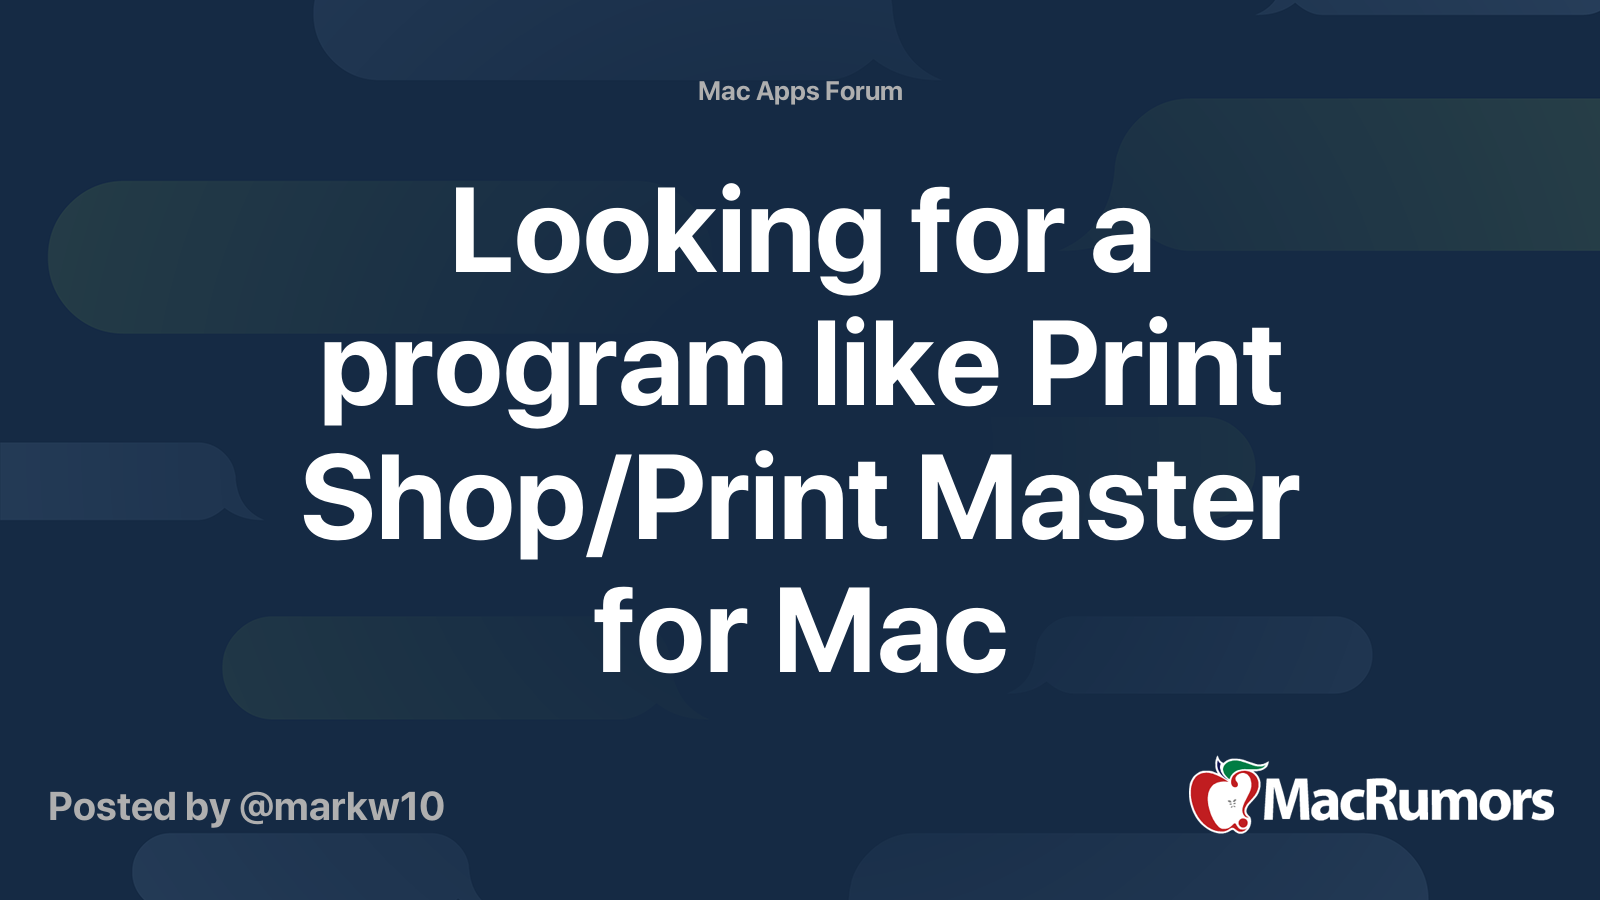 udskille udsagnsord mørkere Looking for a program like Print Shop/Print Master for Mac | MacRumors  Forums